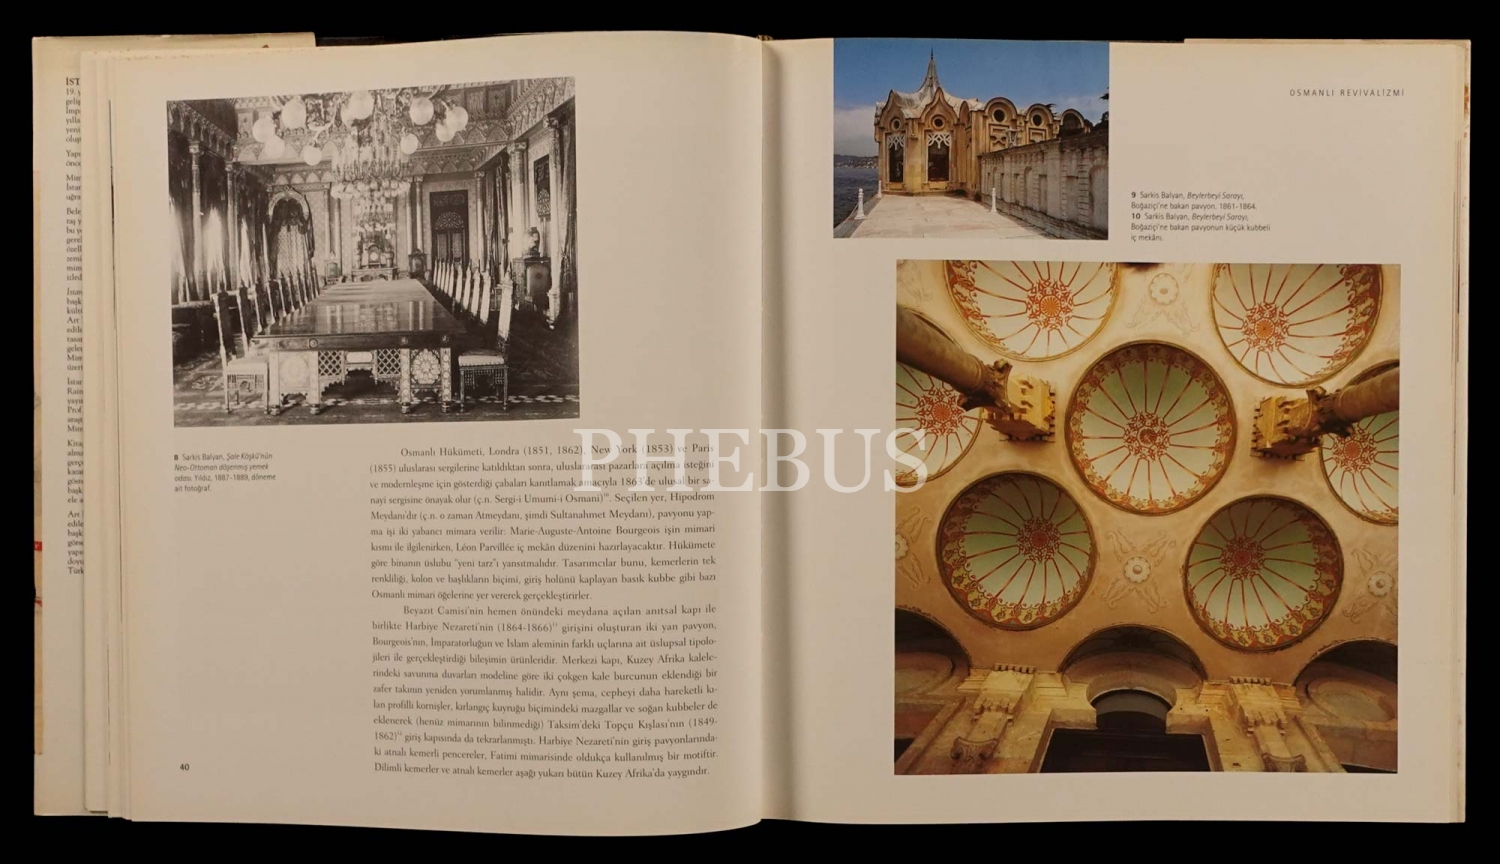 İSTANBUL 1900 (Art Nouveau Mimarisi ve İç Mekânları), Diana Barillari & Ezio Godoli, 1997, Yem Yayın, 227 sayfa, 26x30 cm...